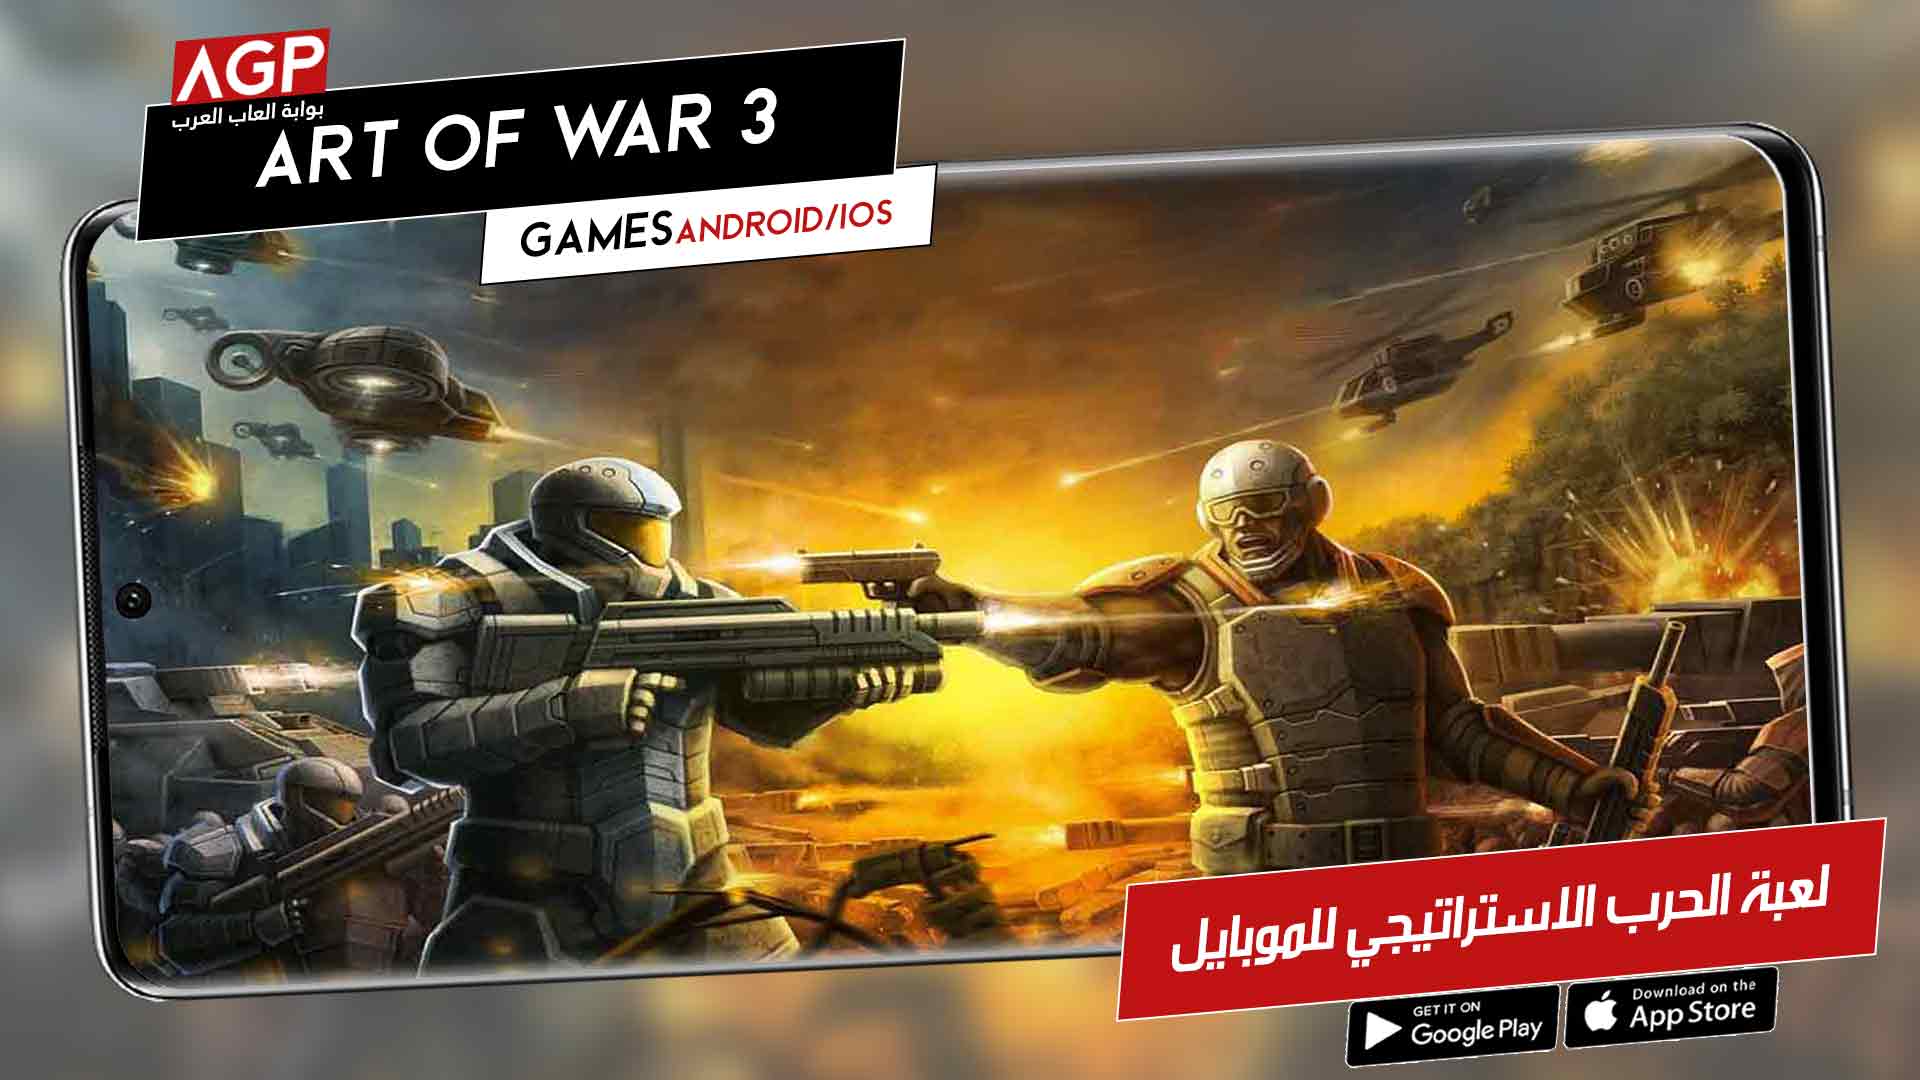 لعبة الحرب الاستراتيجي Art of War 3 الان للموبايل